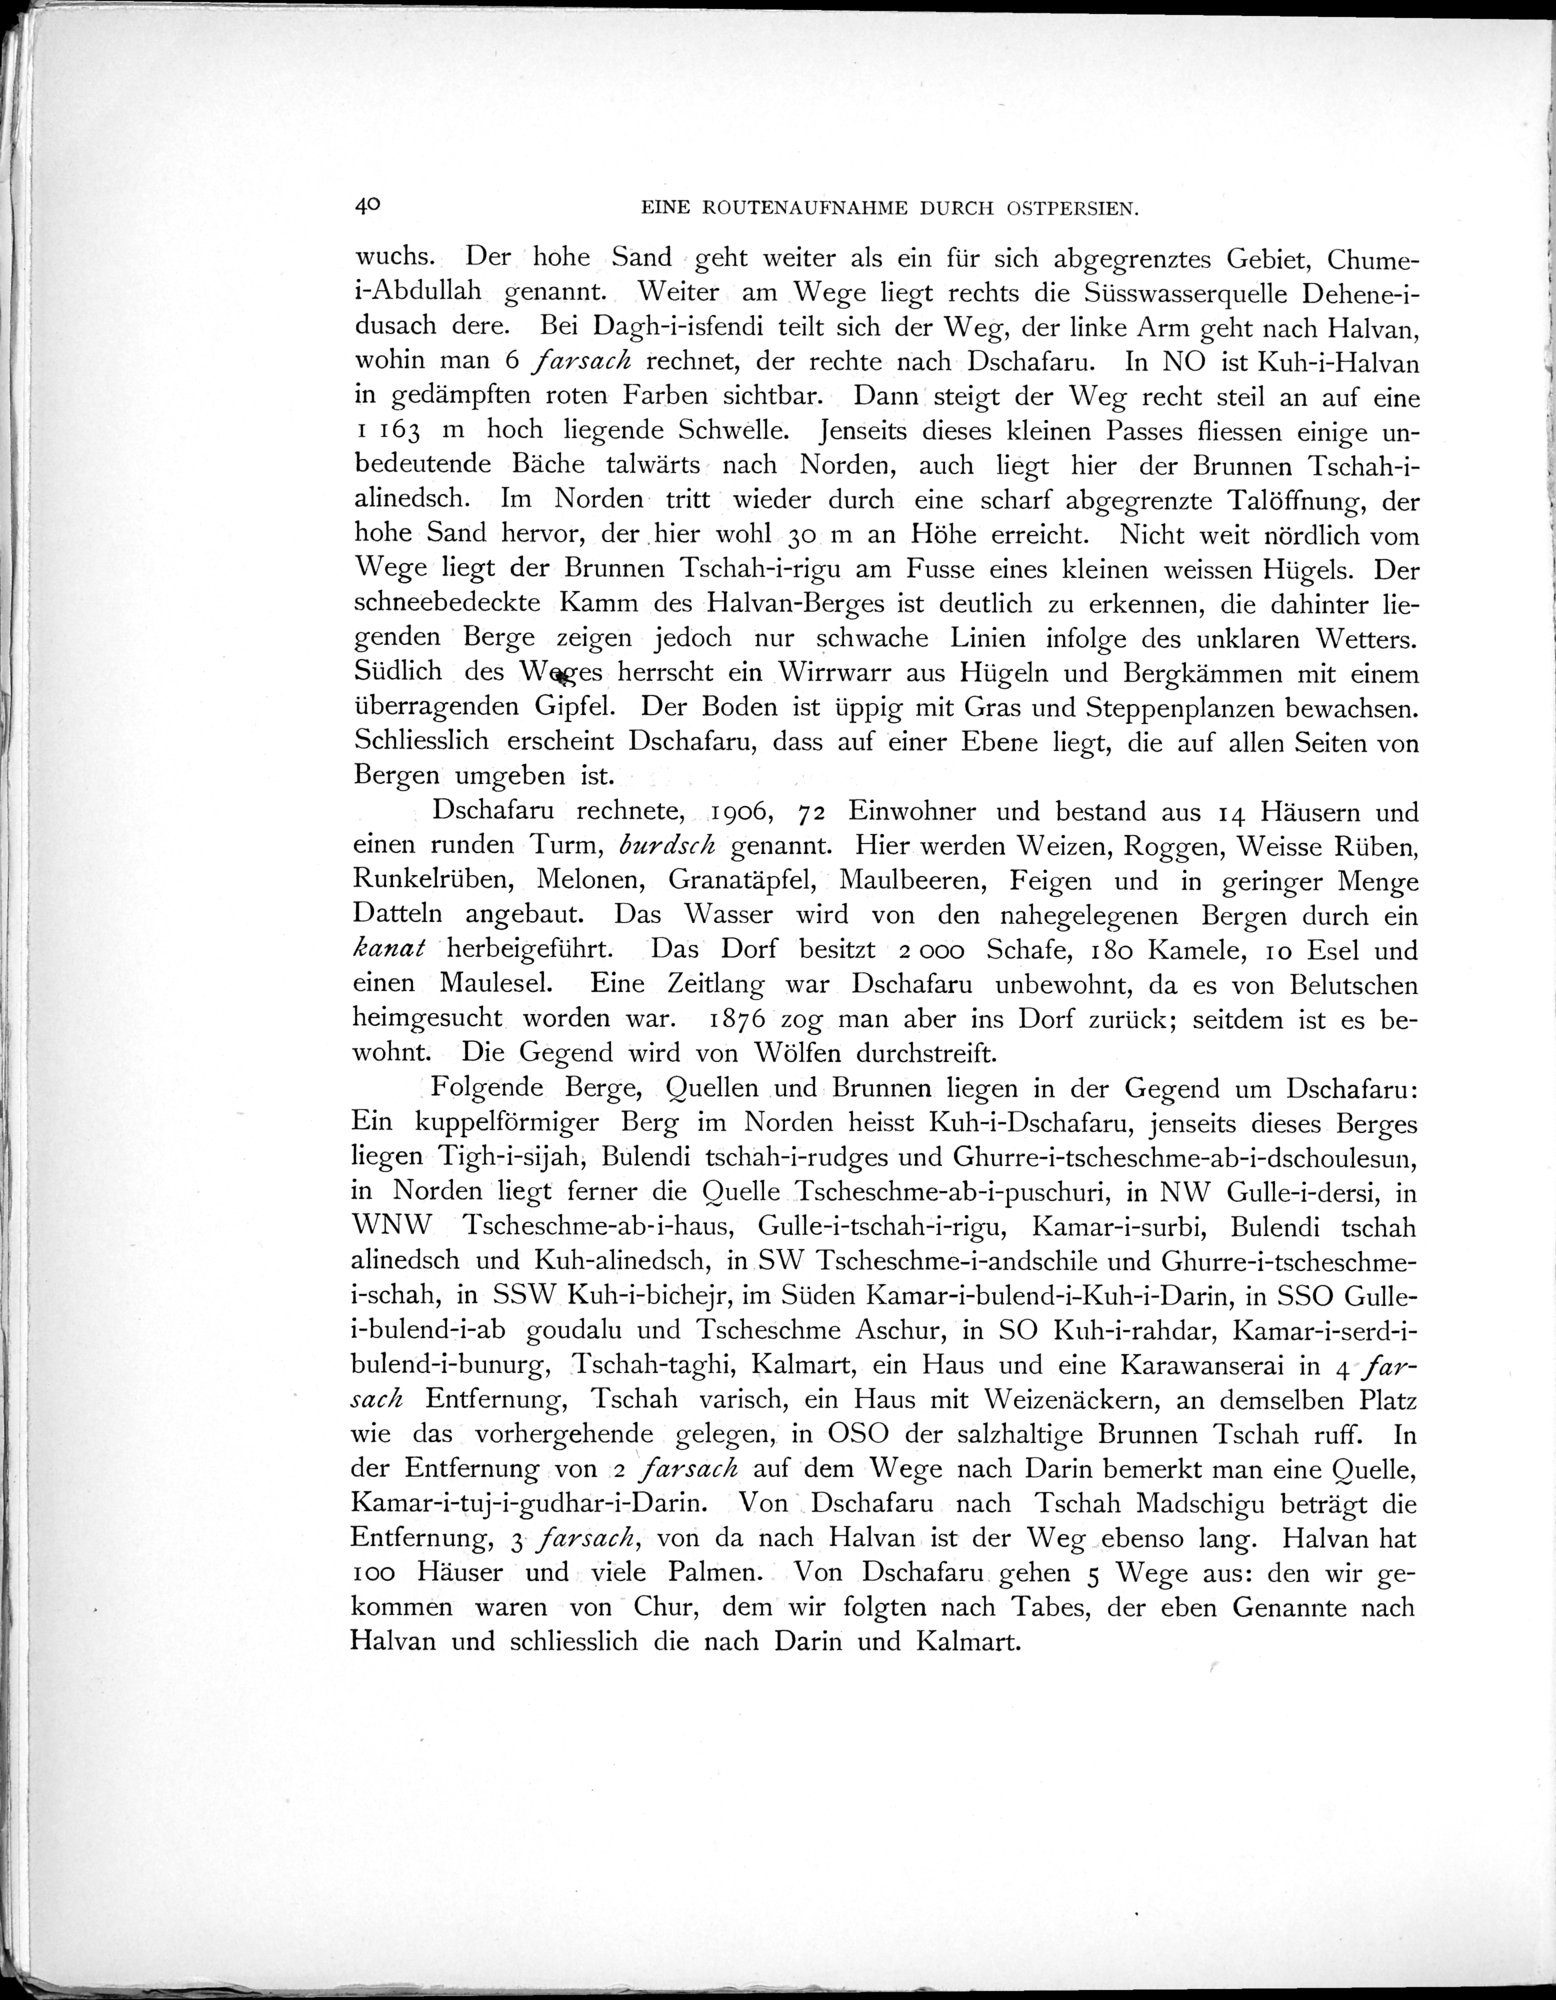 Eine Routenaufnahme durch Ostpersien : vol.1 / Page 112 (Grayscale High Resolution Image)